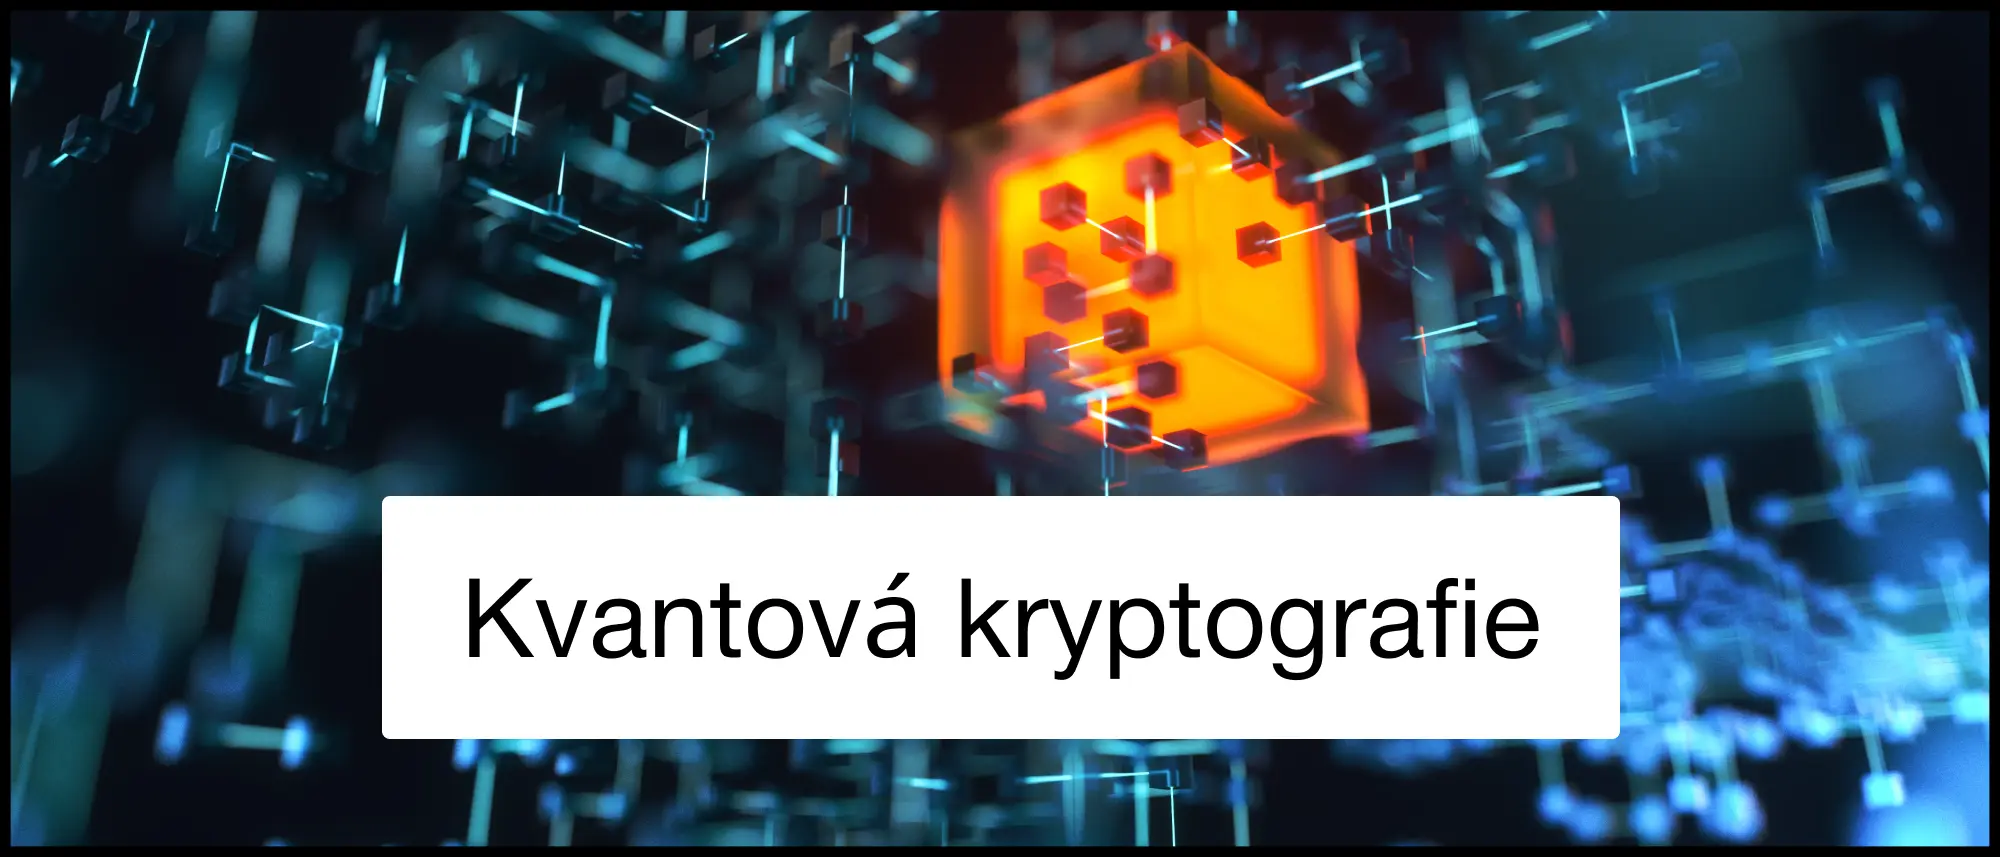 Kvantová kryptografie